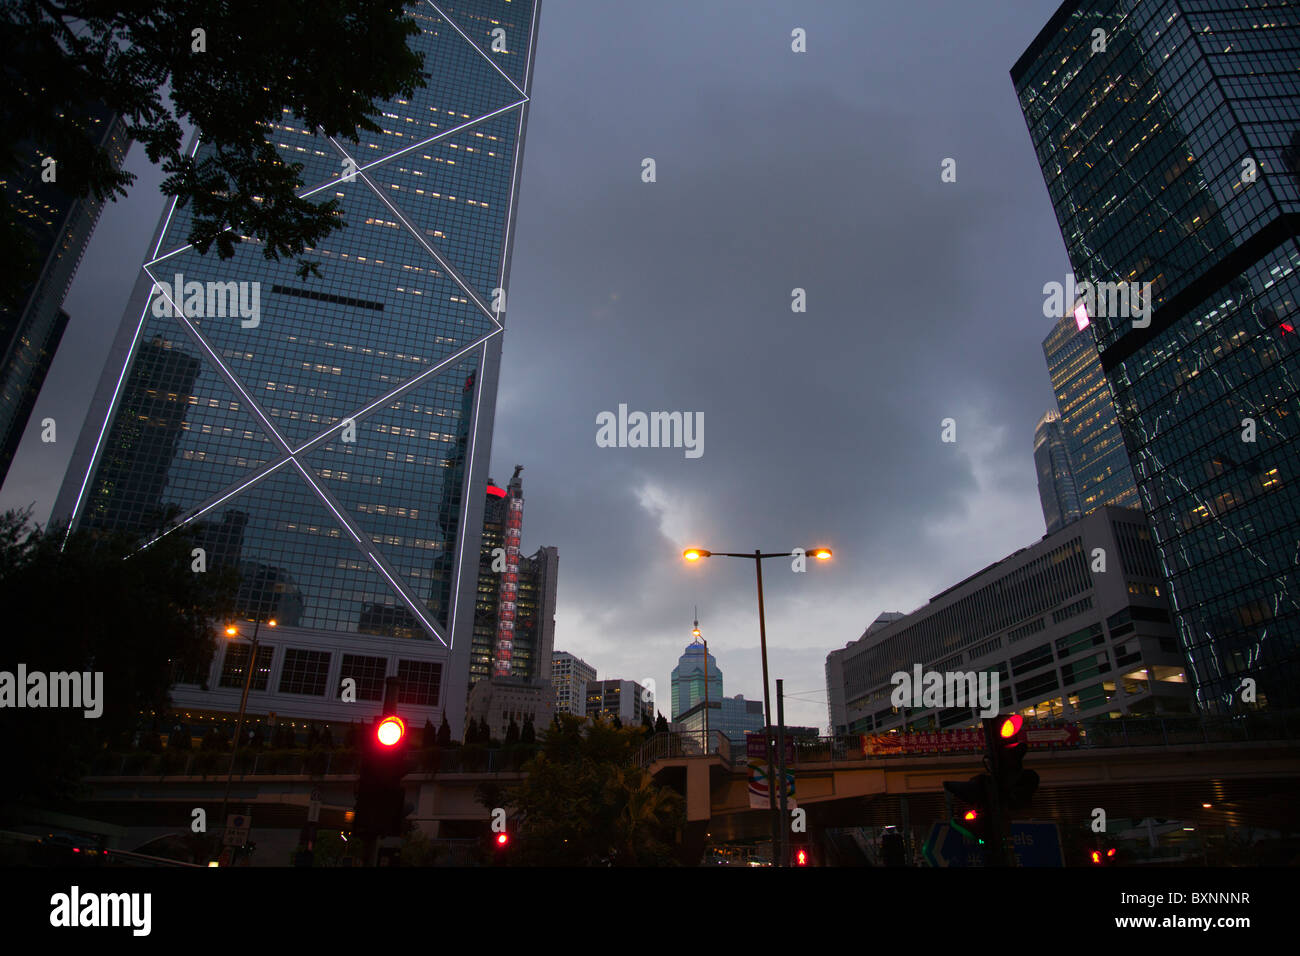 L'emblématique édifice Banque de Chine sur l'île de Hong Kong au crépuscule Banque D'Images